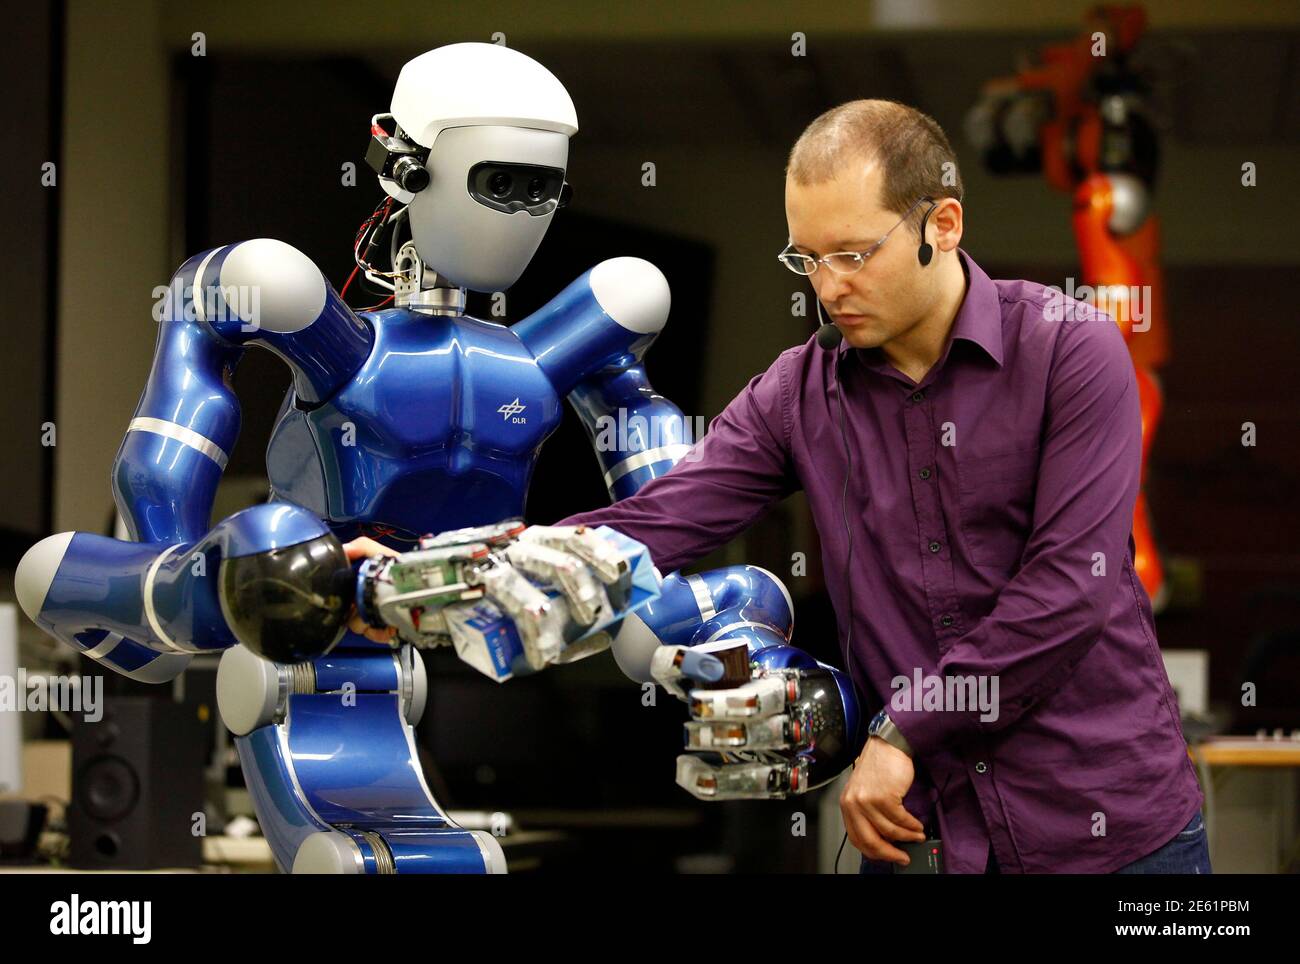 Про будущее и роботов. Современные роботы. Роботы ученые. Робототехника. Робототехник профессия.